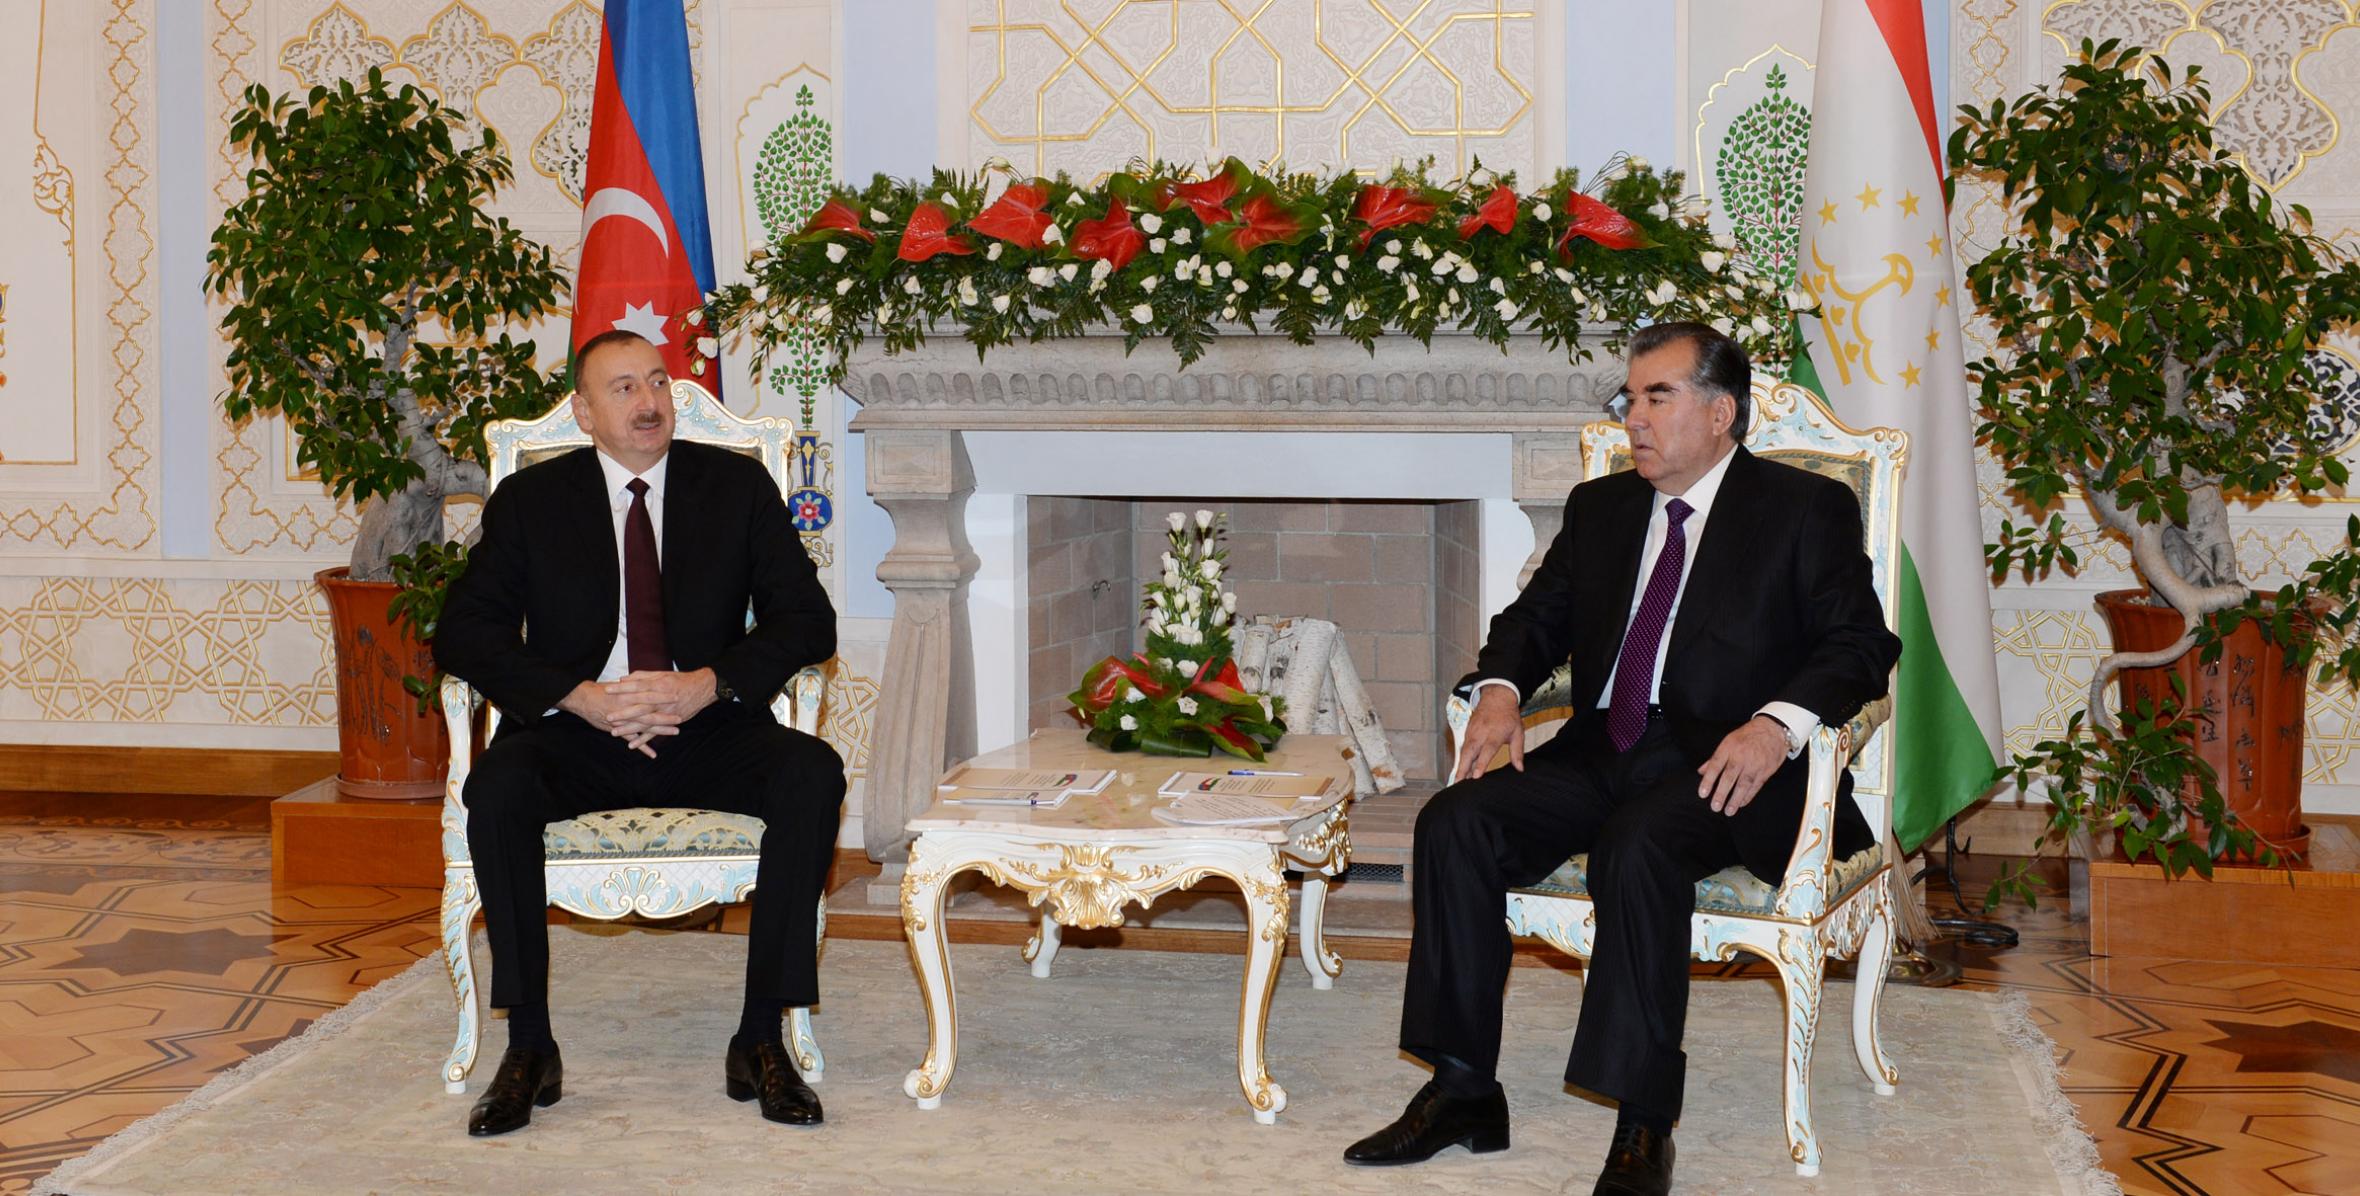 Состоялась встреча Ильхама Алиева и Президента Республики Таджикистан Эмомали Рахмона один на один